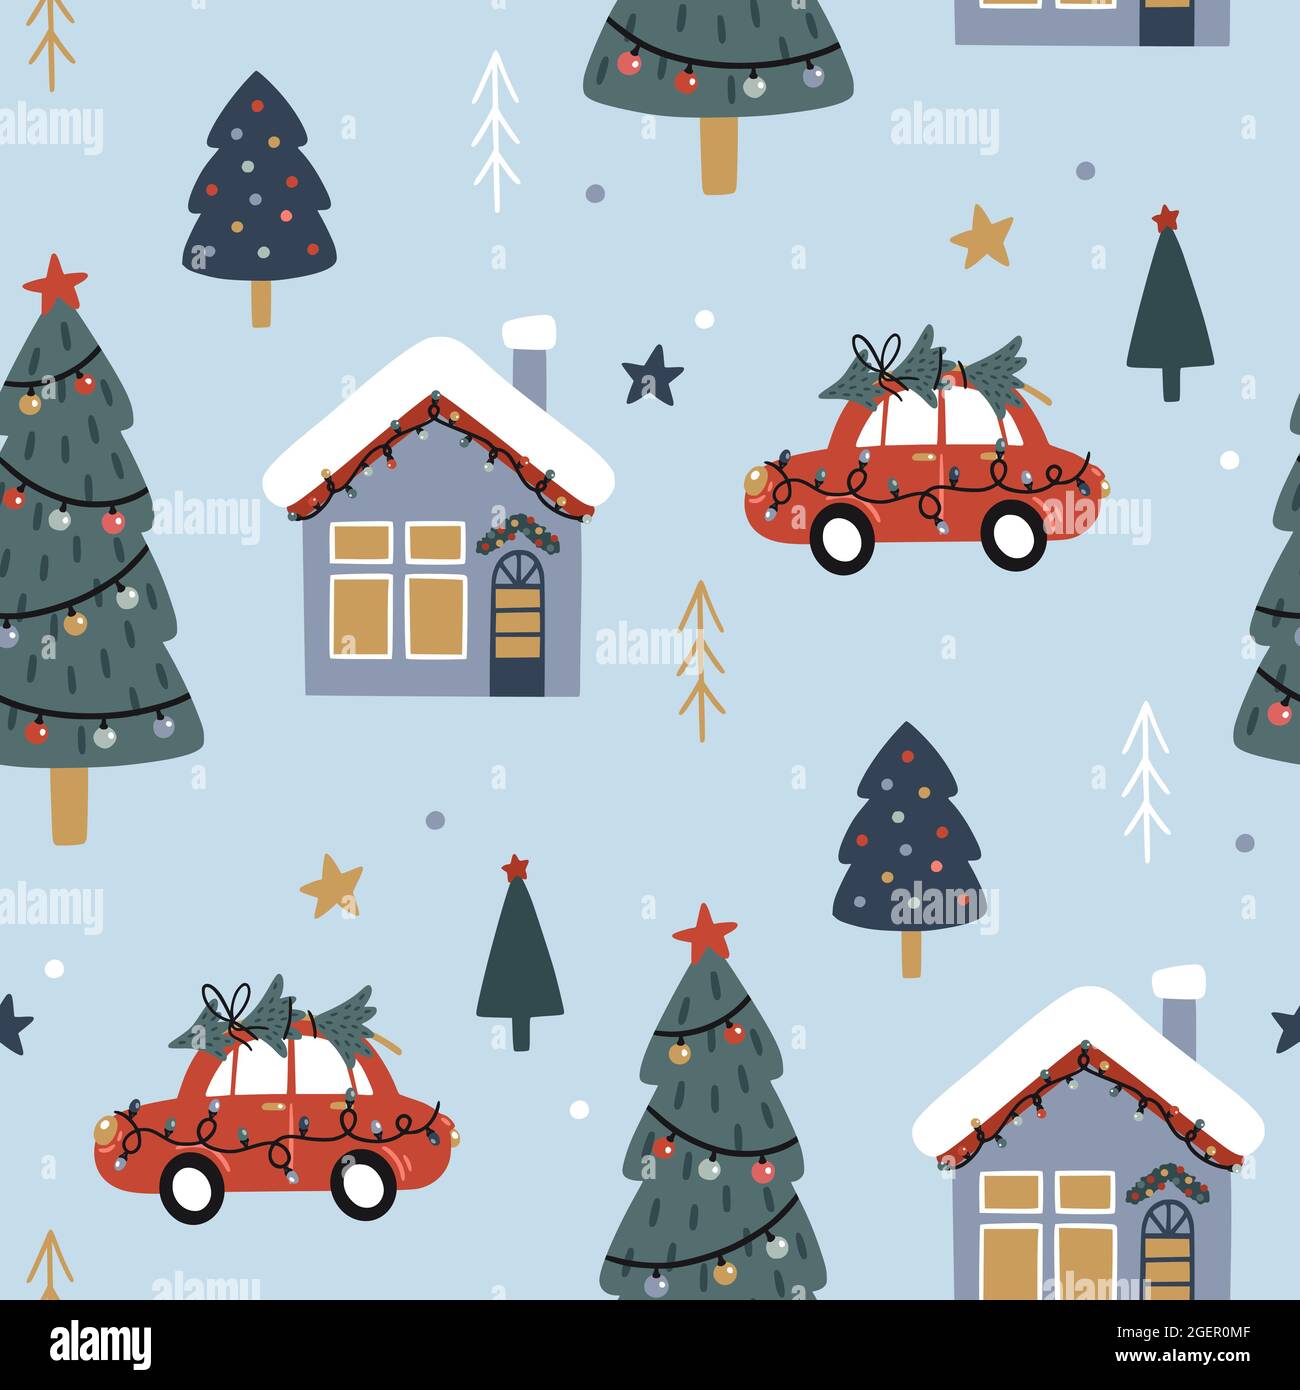 Festliches Deko Auto Rot Mit Weihnachtsbaum Auf Dem Dach